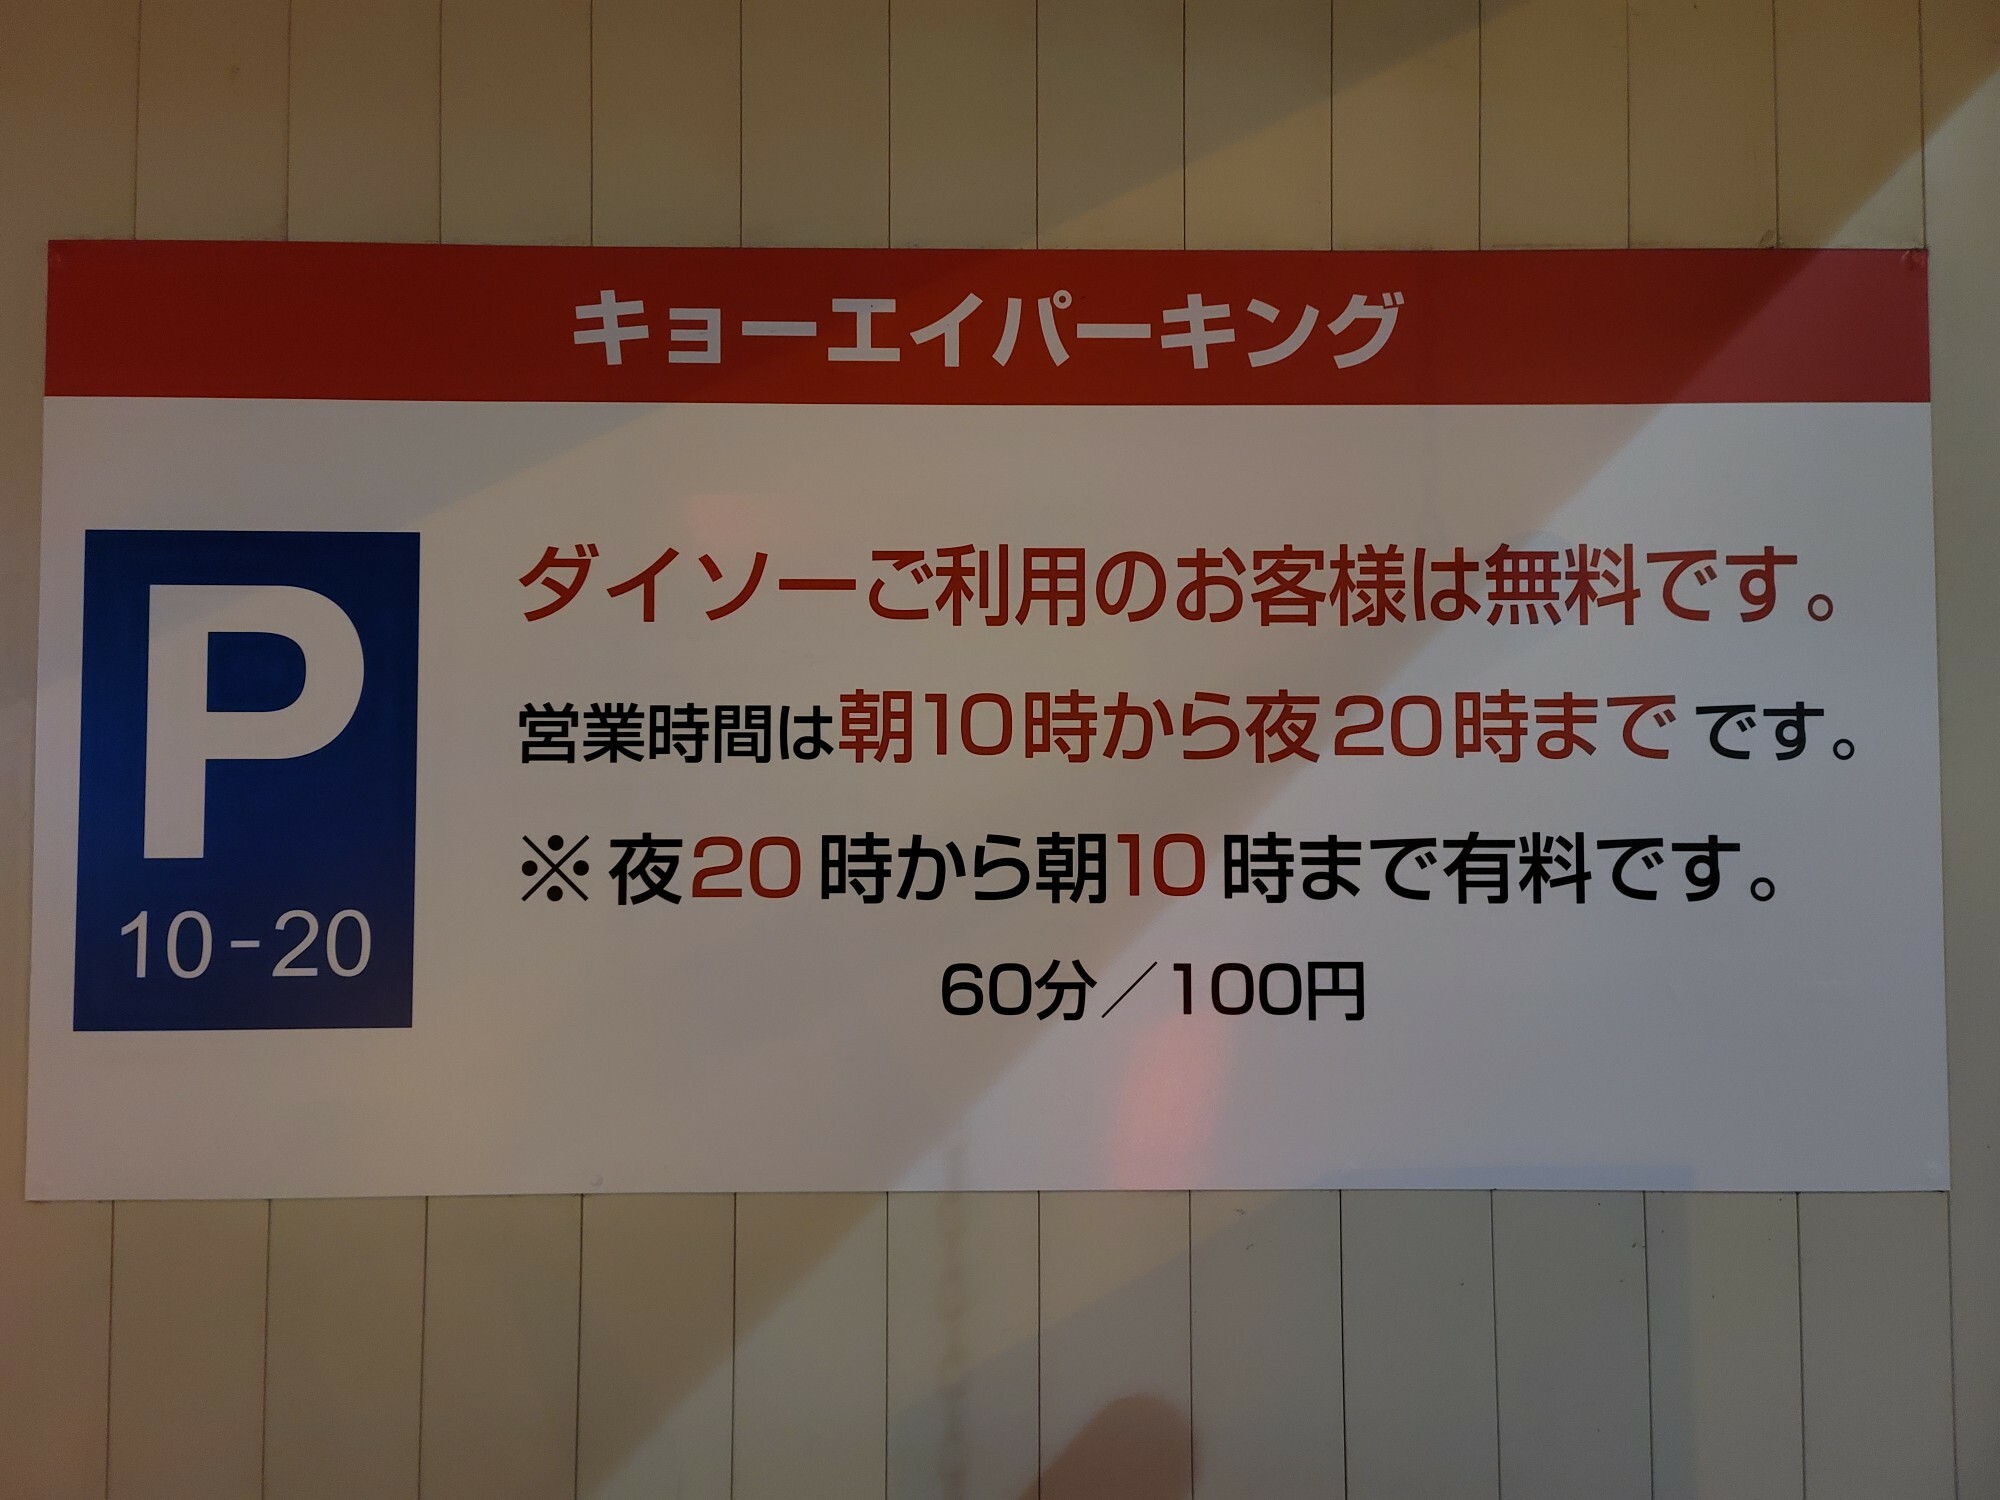 「DAISO 徳島二軒屋店」のキョーエイパーキング。